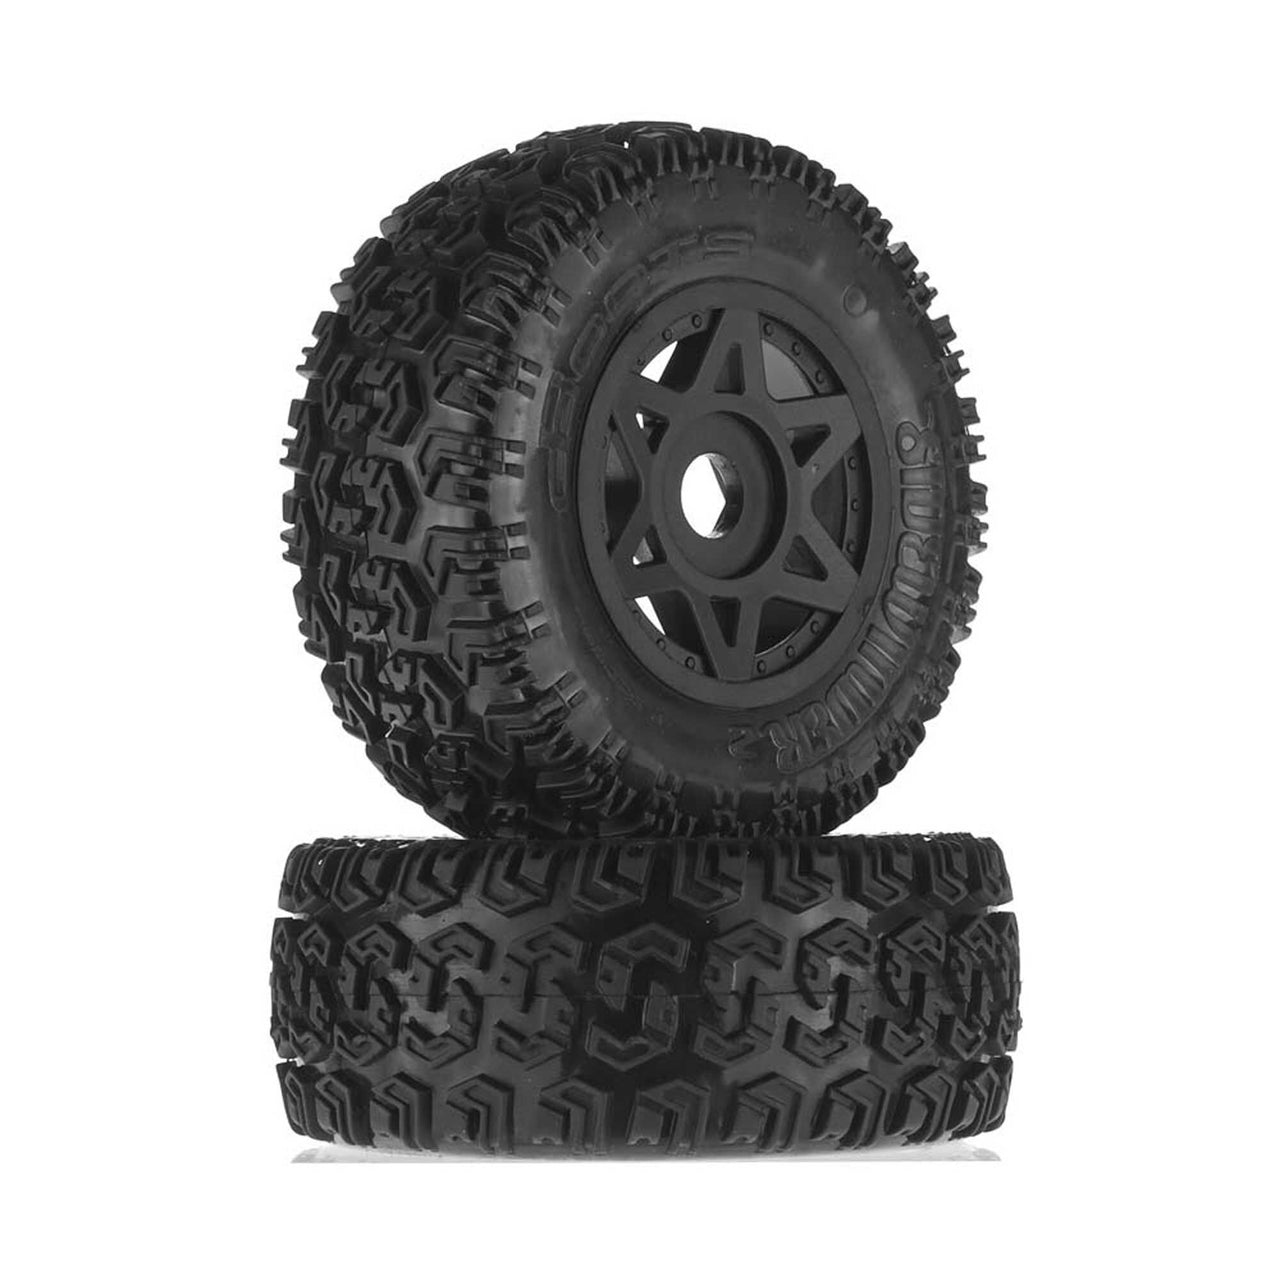 ARAC9422 1/10 dBoots Sidewinder 2 pneus avant/arrière 2.2/3.0 pré-montés, hexagone 17 mm, noir (2) : 6S ARAC9422